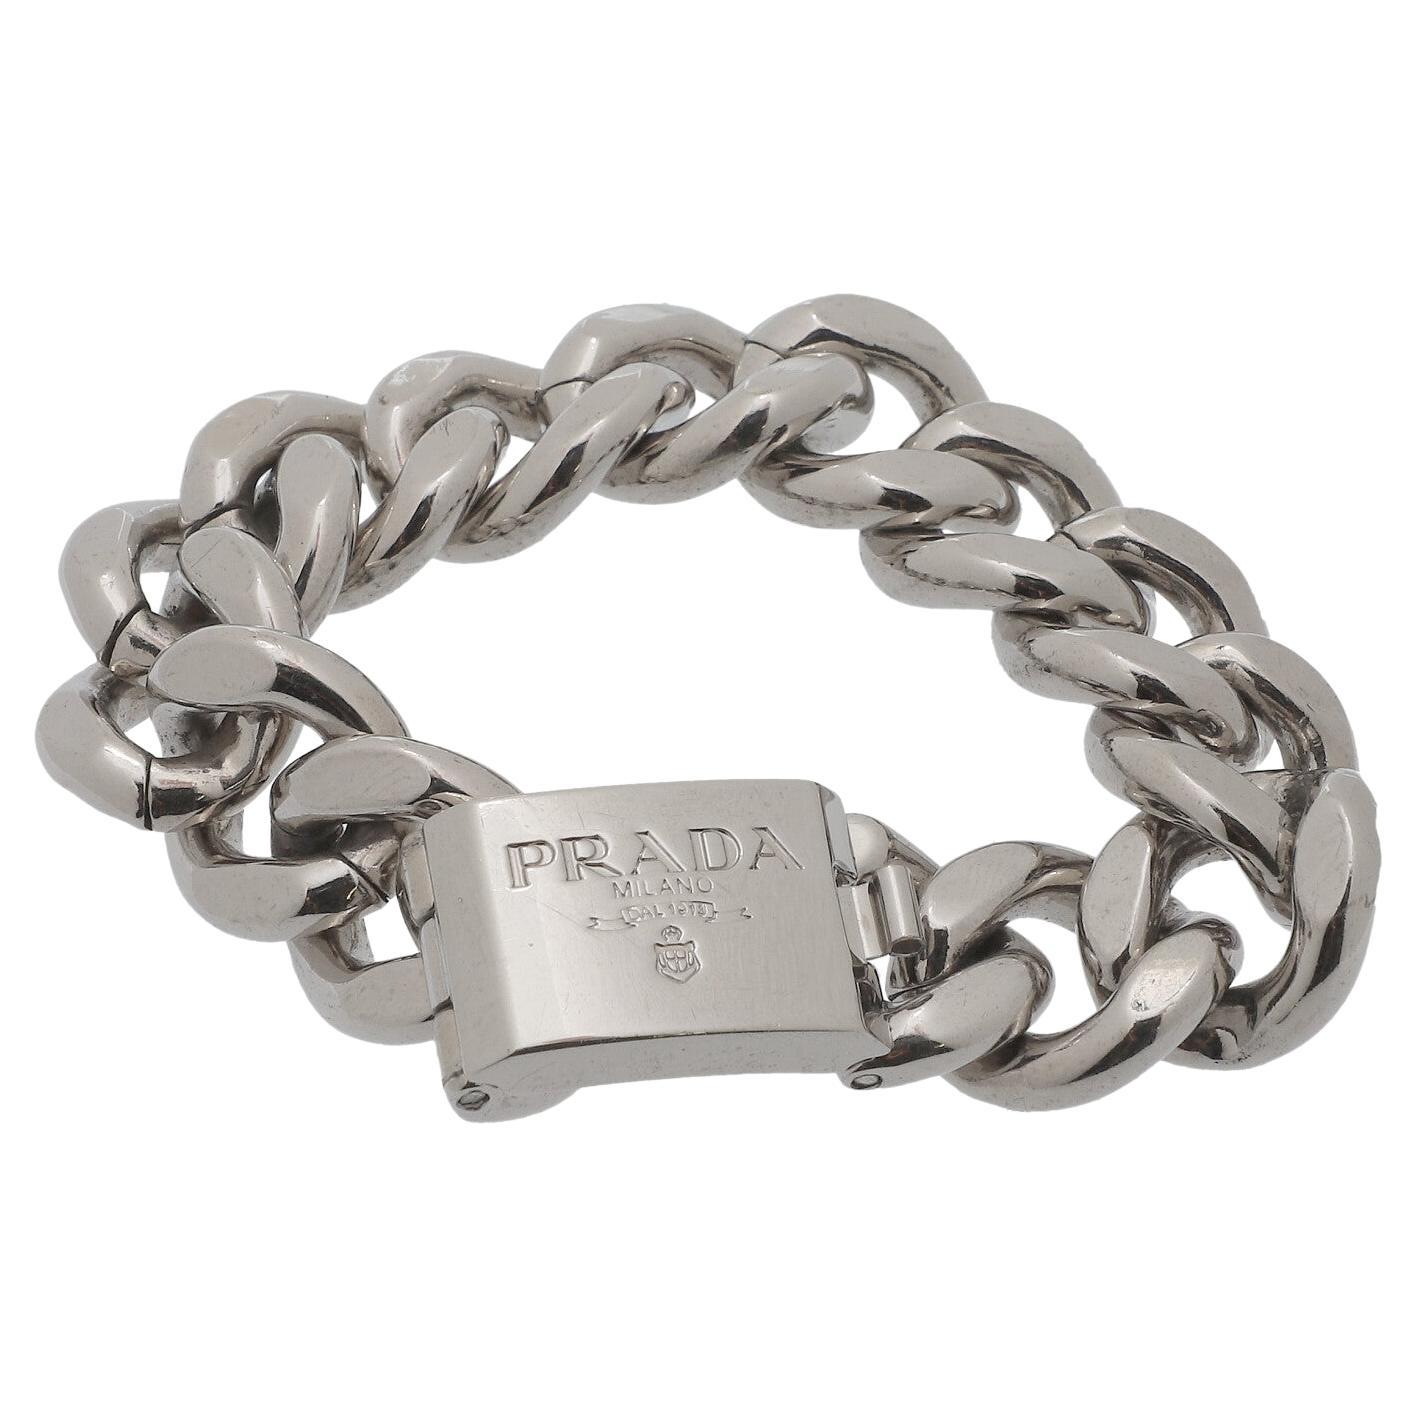 Prada Fashion Jewelry Bracelet